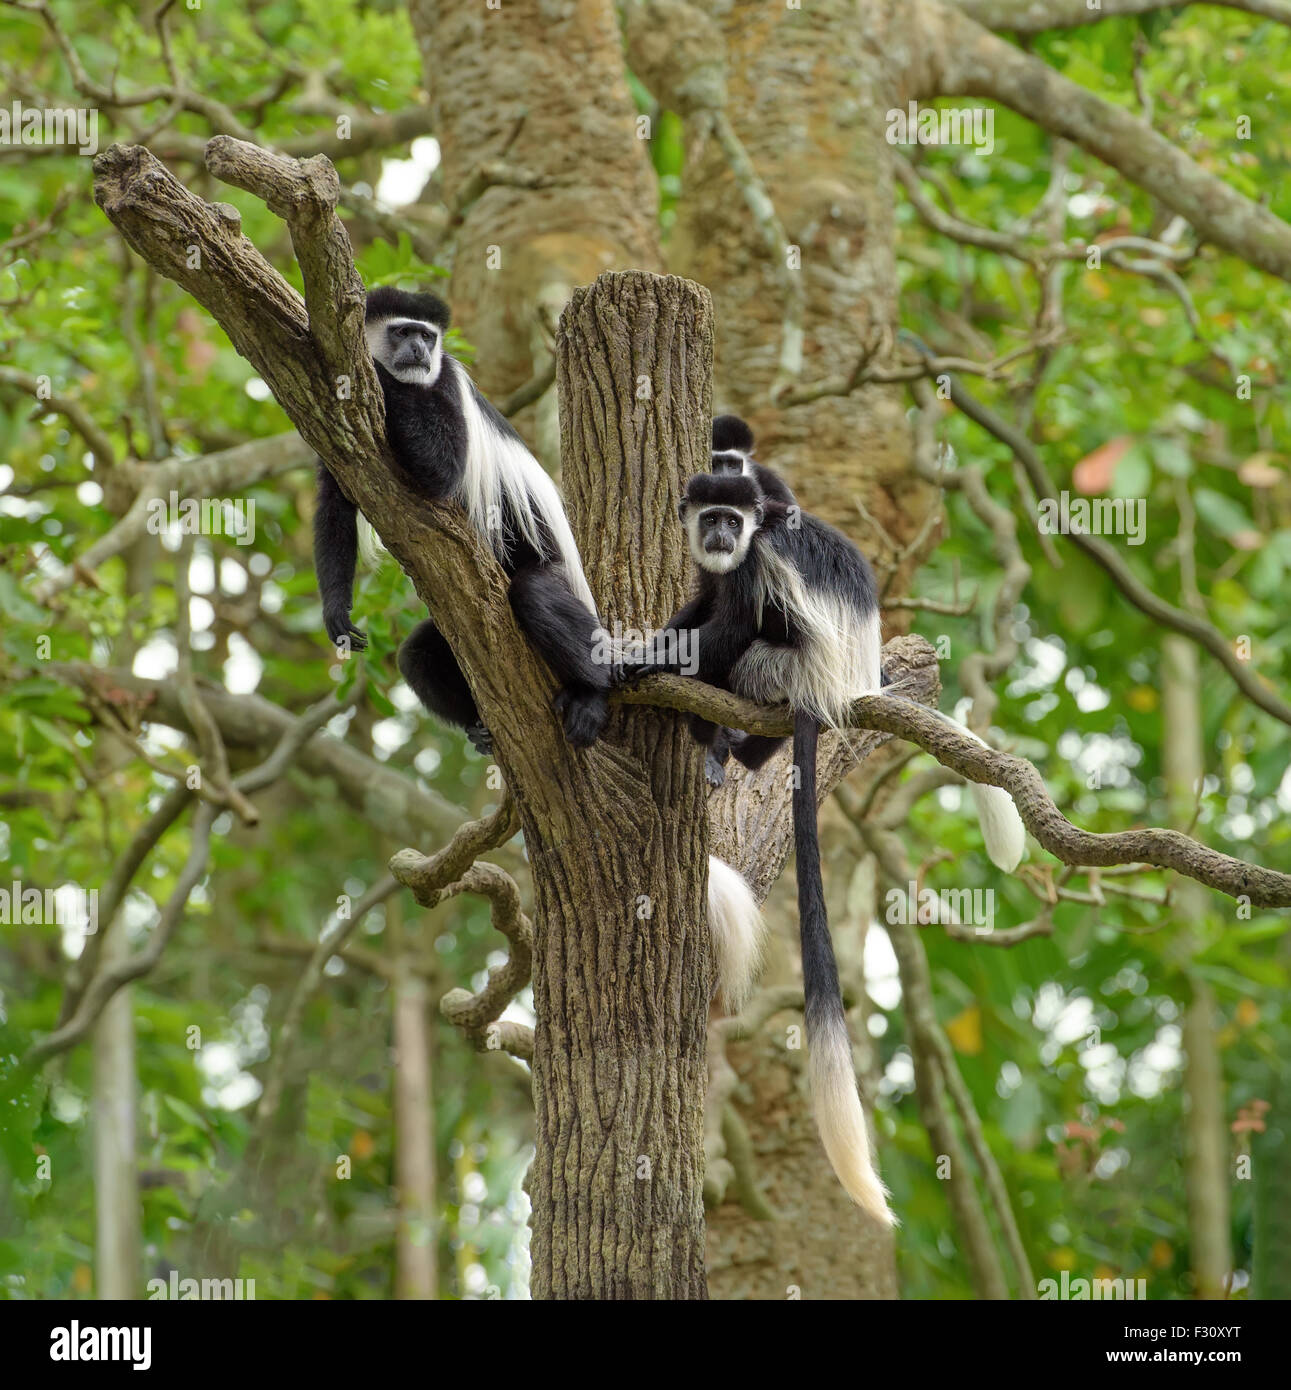 Monos en un arbol fotografías e imágenes alta resolución Alamy